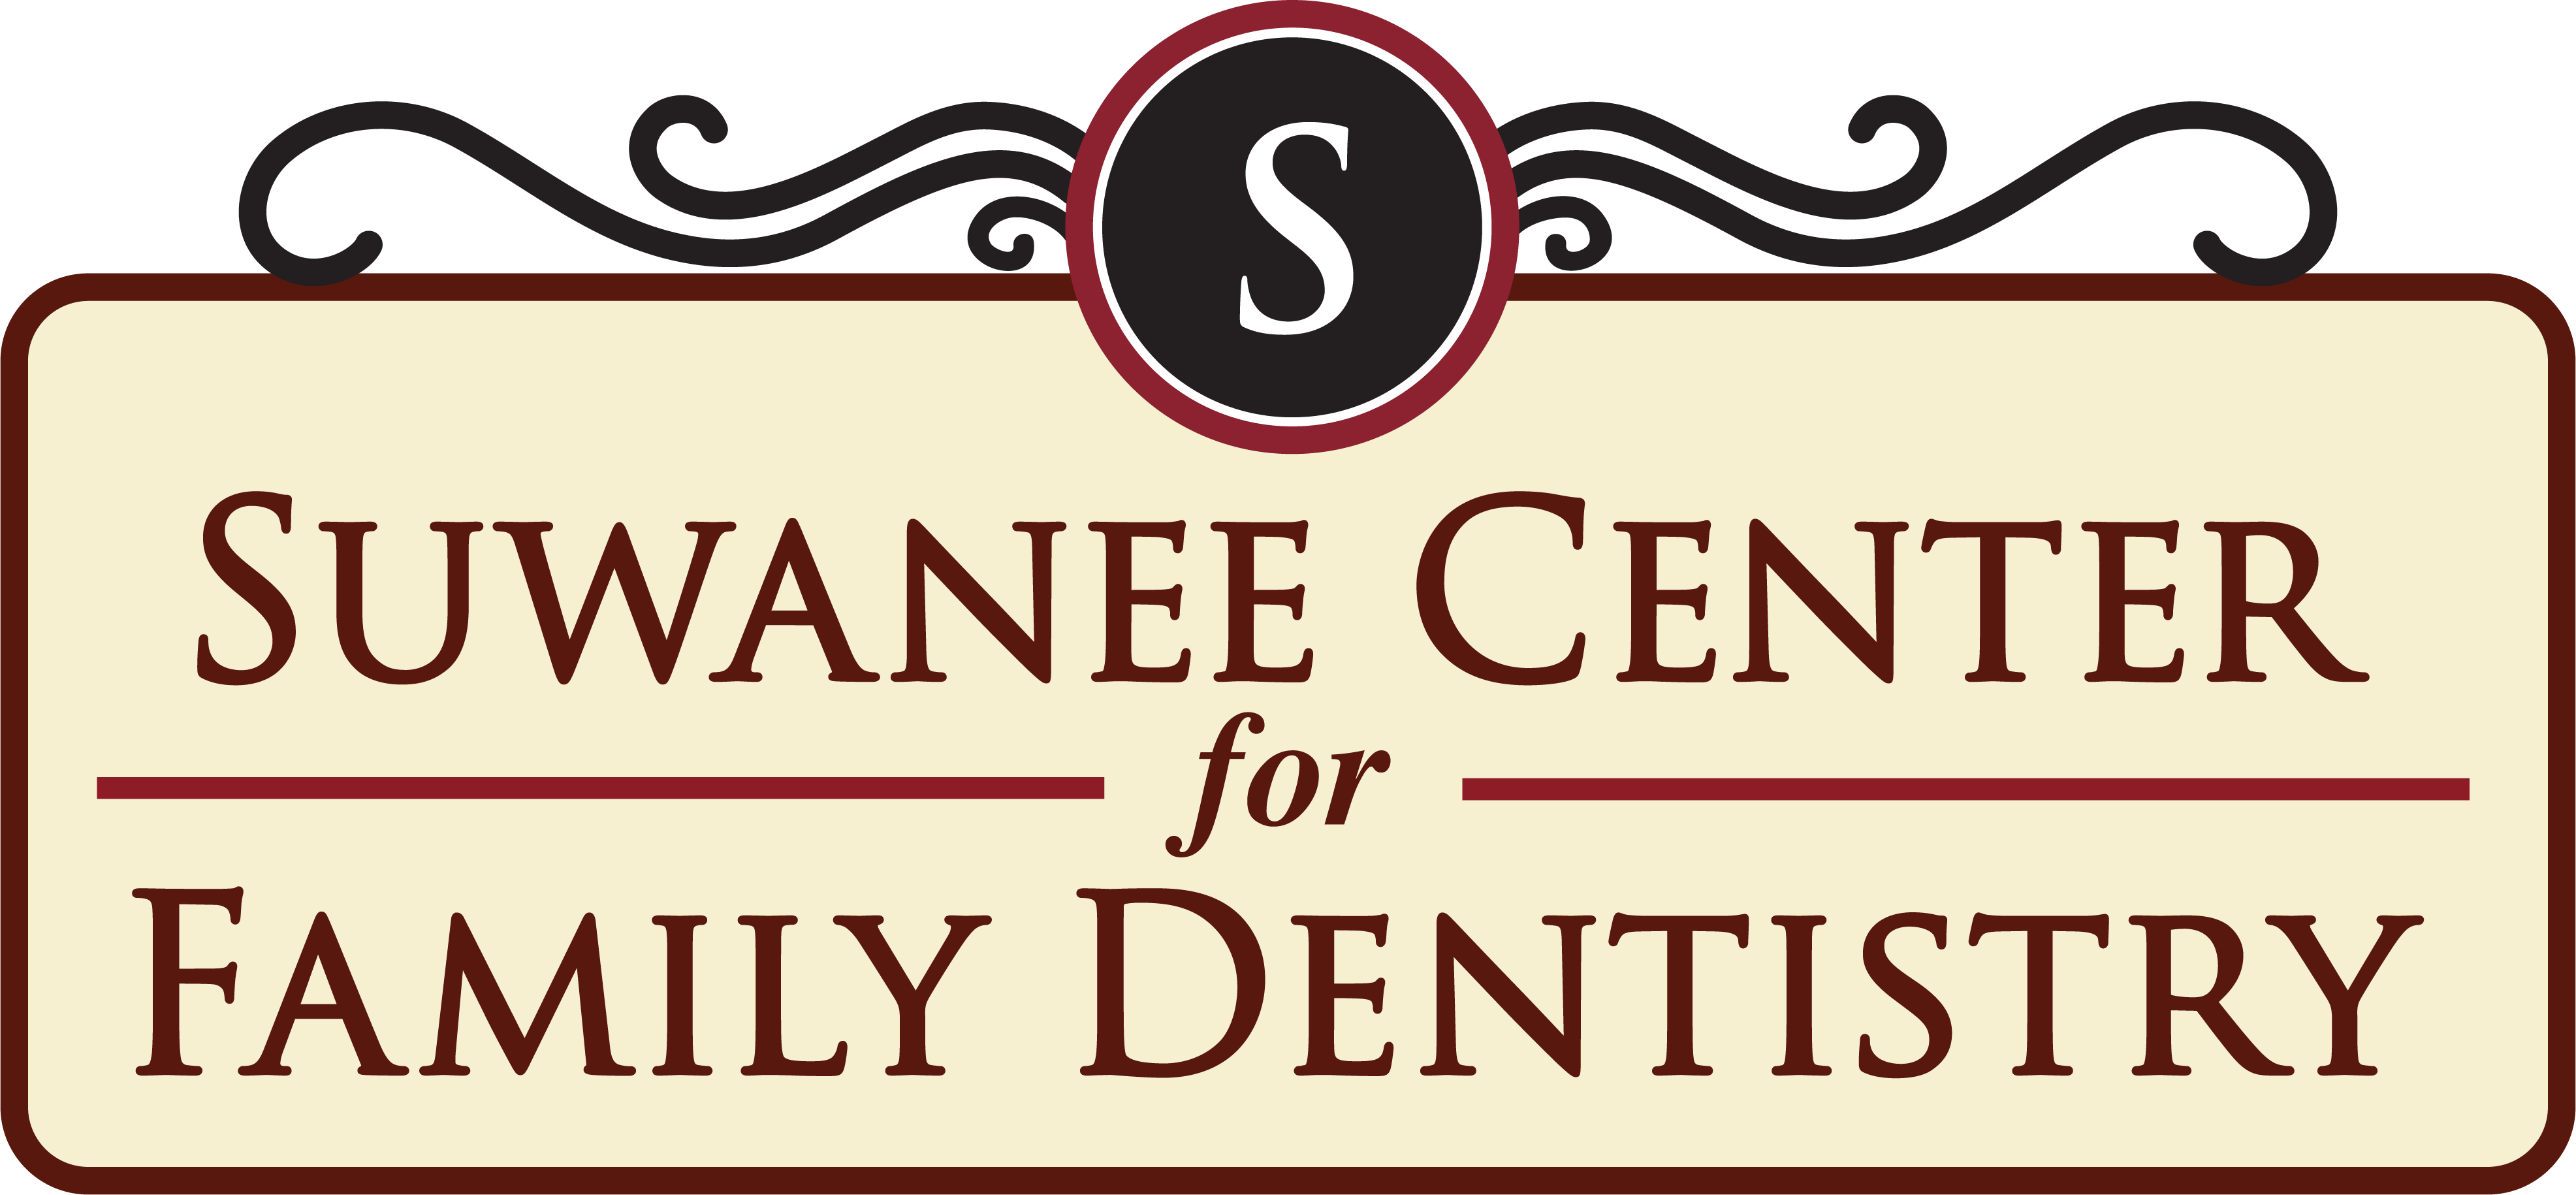 Suwanee Center for Family Dentistry